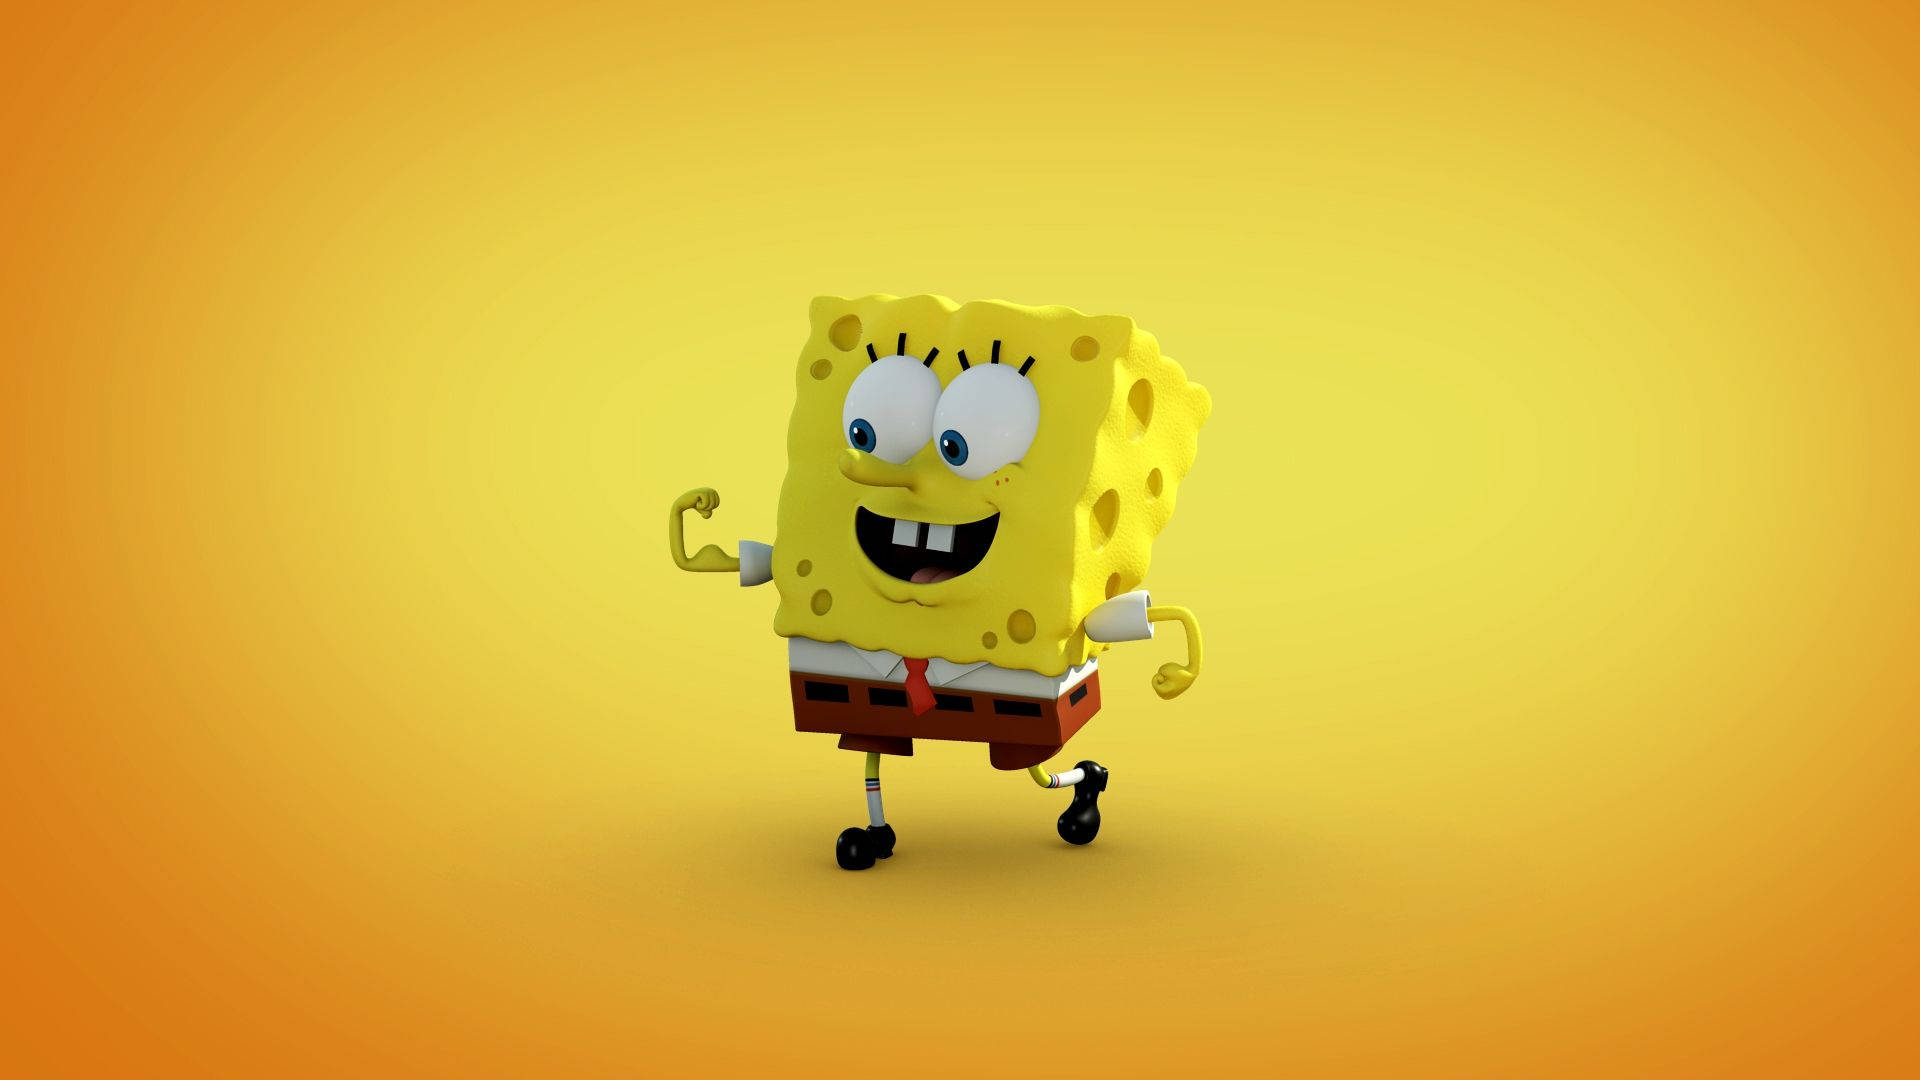 Spongebob Cartoon 3d Android Phone Wallpaper